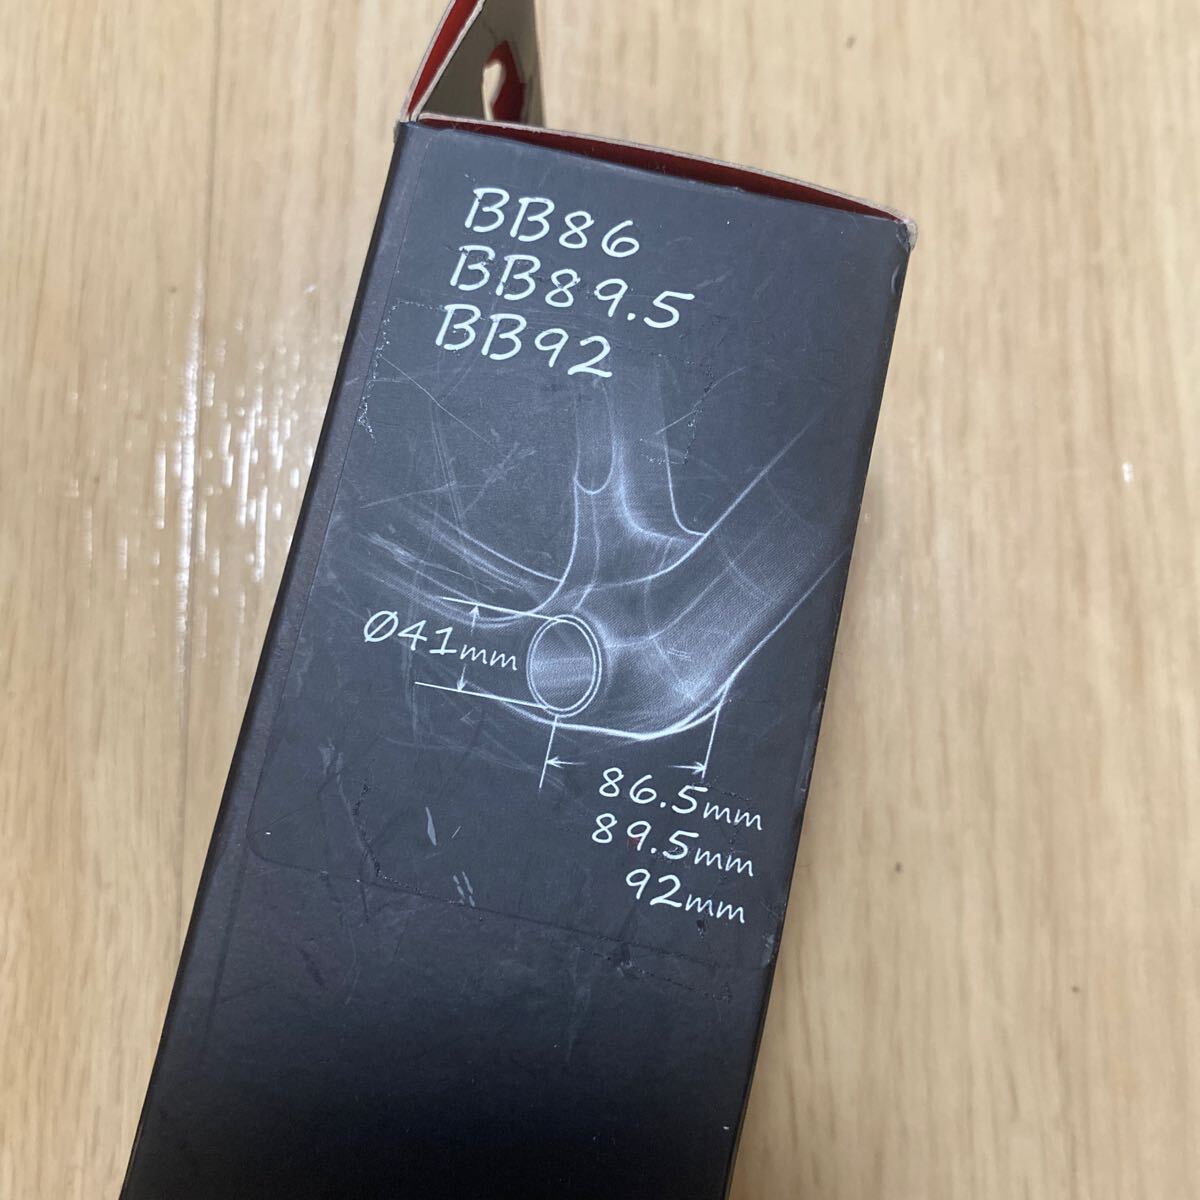 新品 BB86 BB89.5 BB92 用のボトムブラケット TOKEN シマノ24mm プレミアムベアリング BB841T-41の画像2